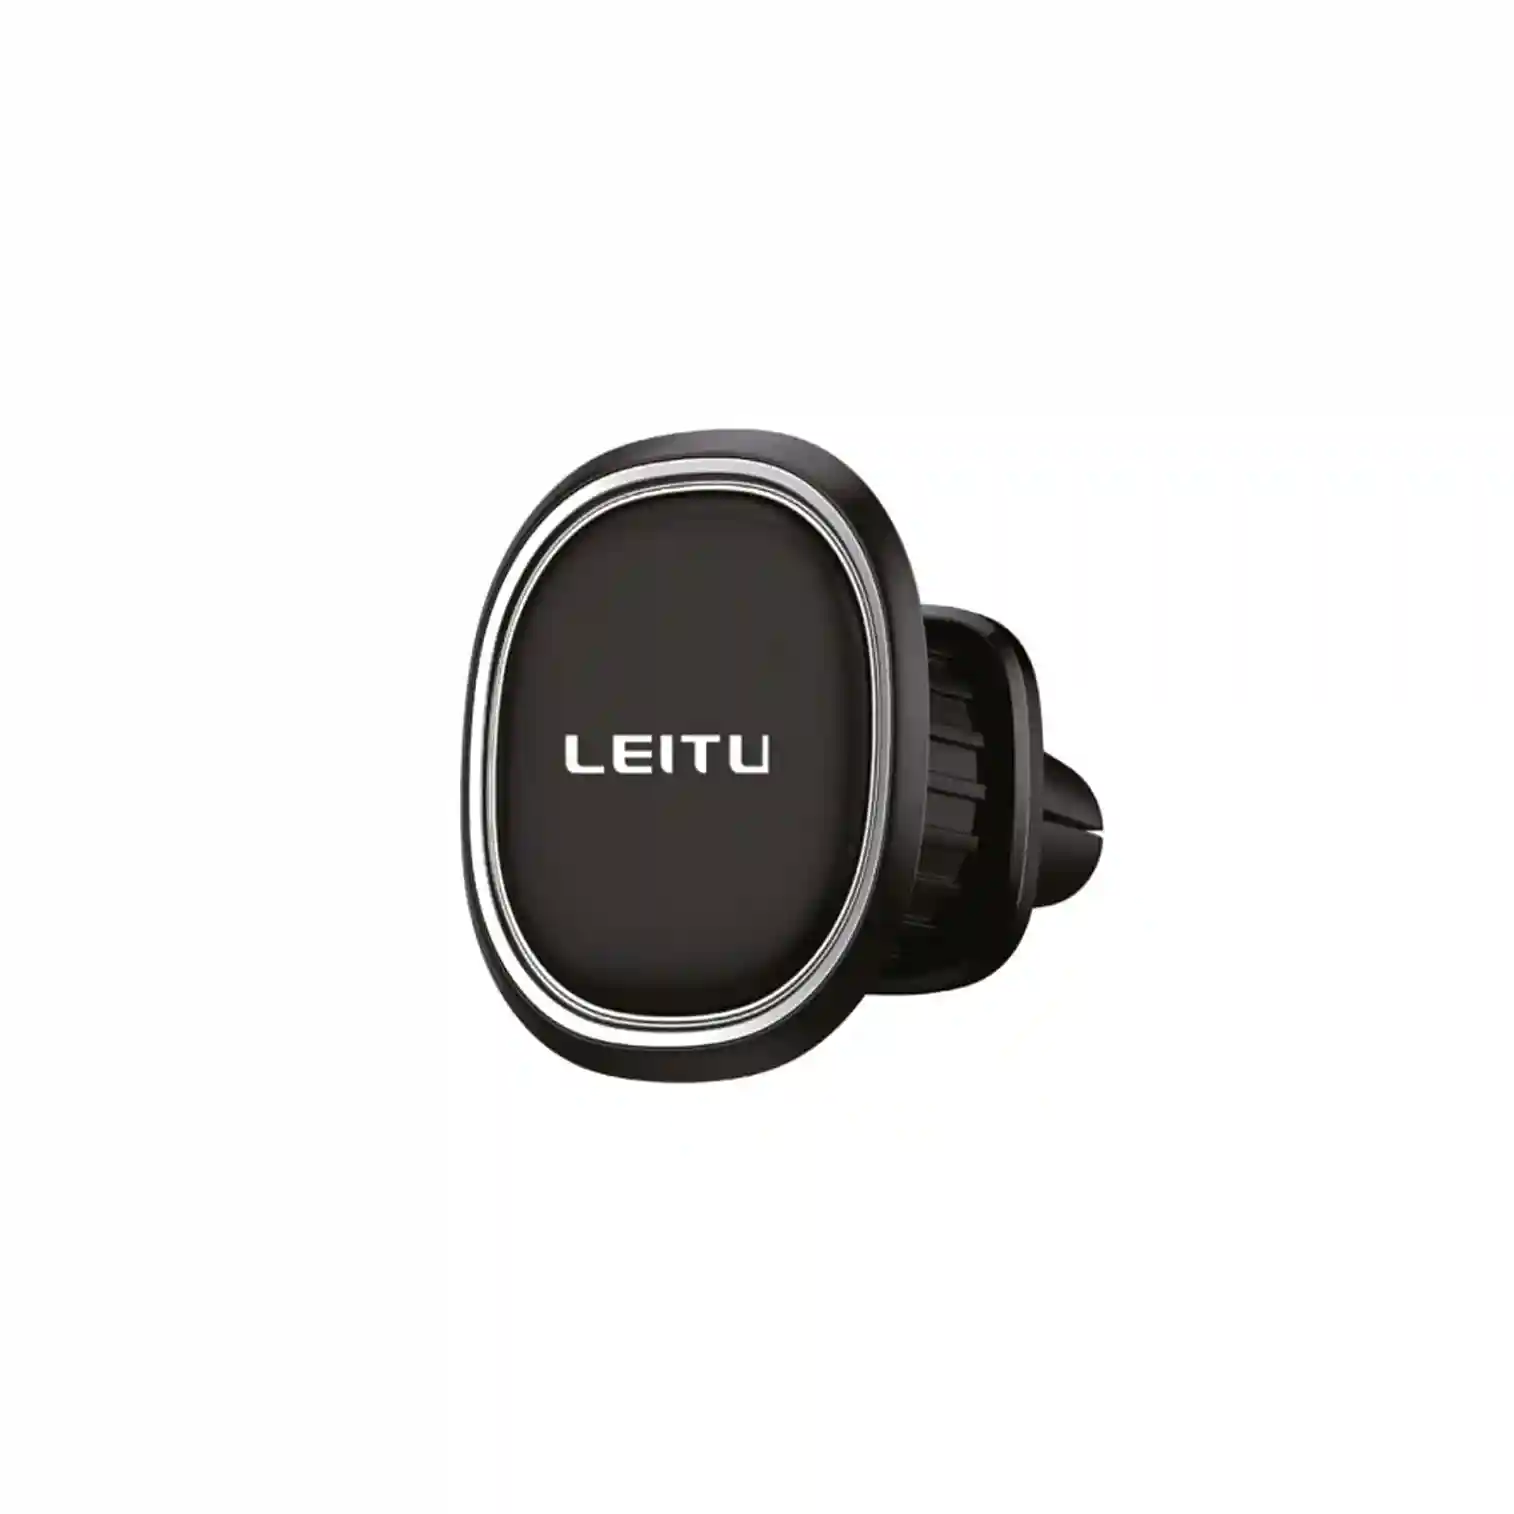 پایه نگهدارنده موبایل یا هولدر برند لیتو مدل LR-20 |  هولدر گوشی موبایل لیتو مدل LEITU LR-20 ا Leitu LR-20 Mobile Phone Holder